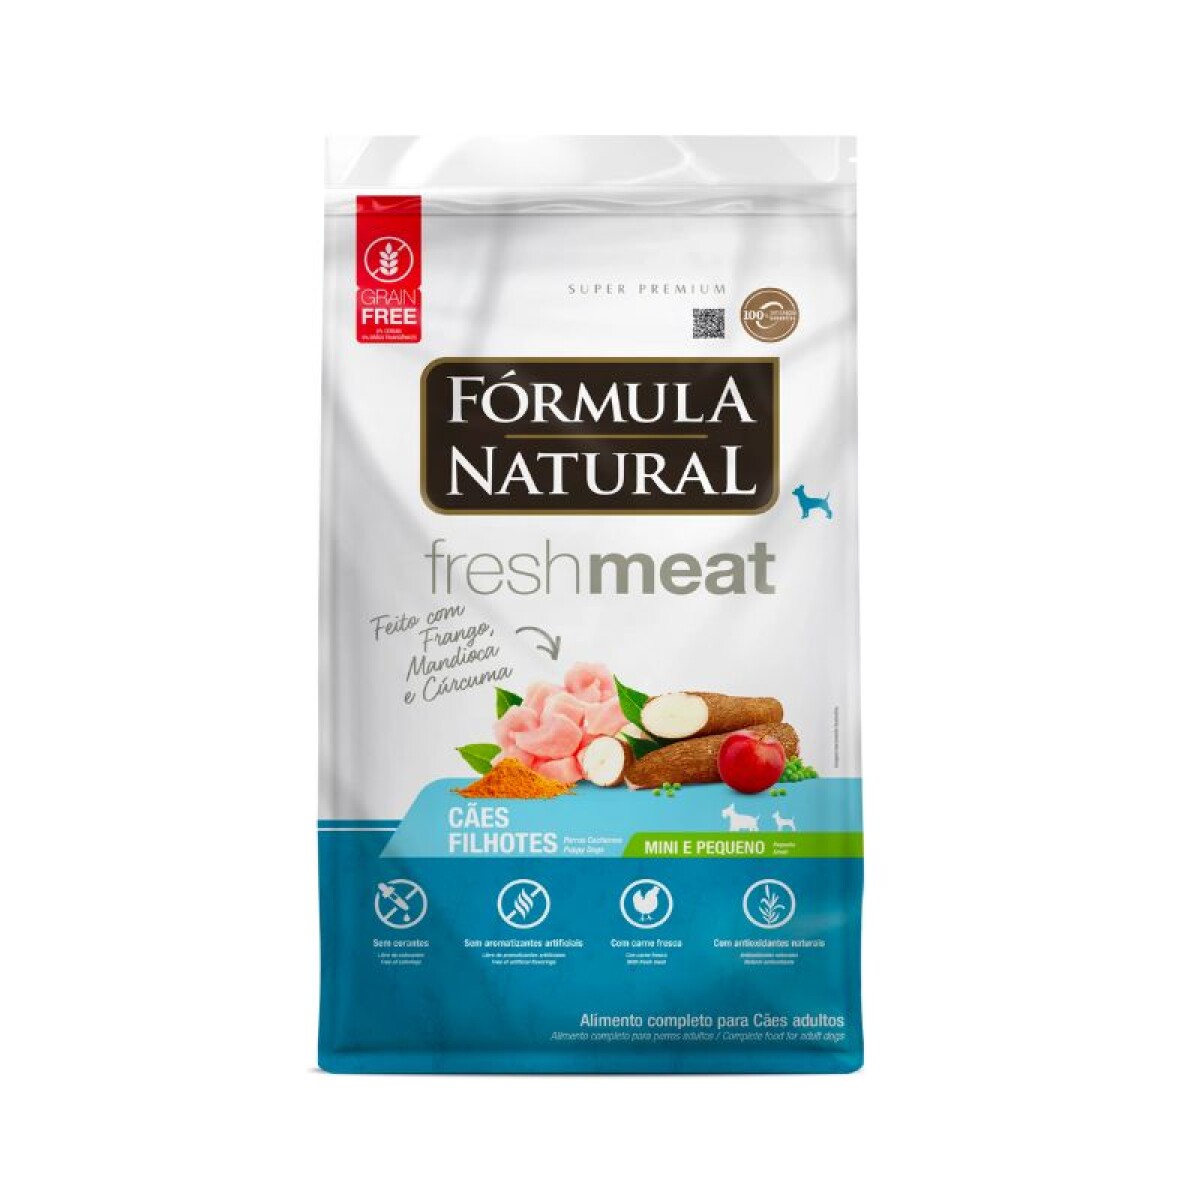 FORMULA NATURAL FRESH MEAT CACHORRO RAZ PEQ 1 KG - Formula Natural Fresh Meat Cachorro Raz Peq 1 Kg 